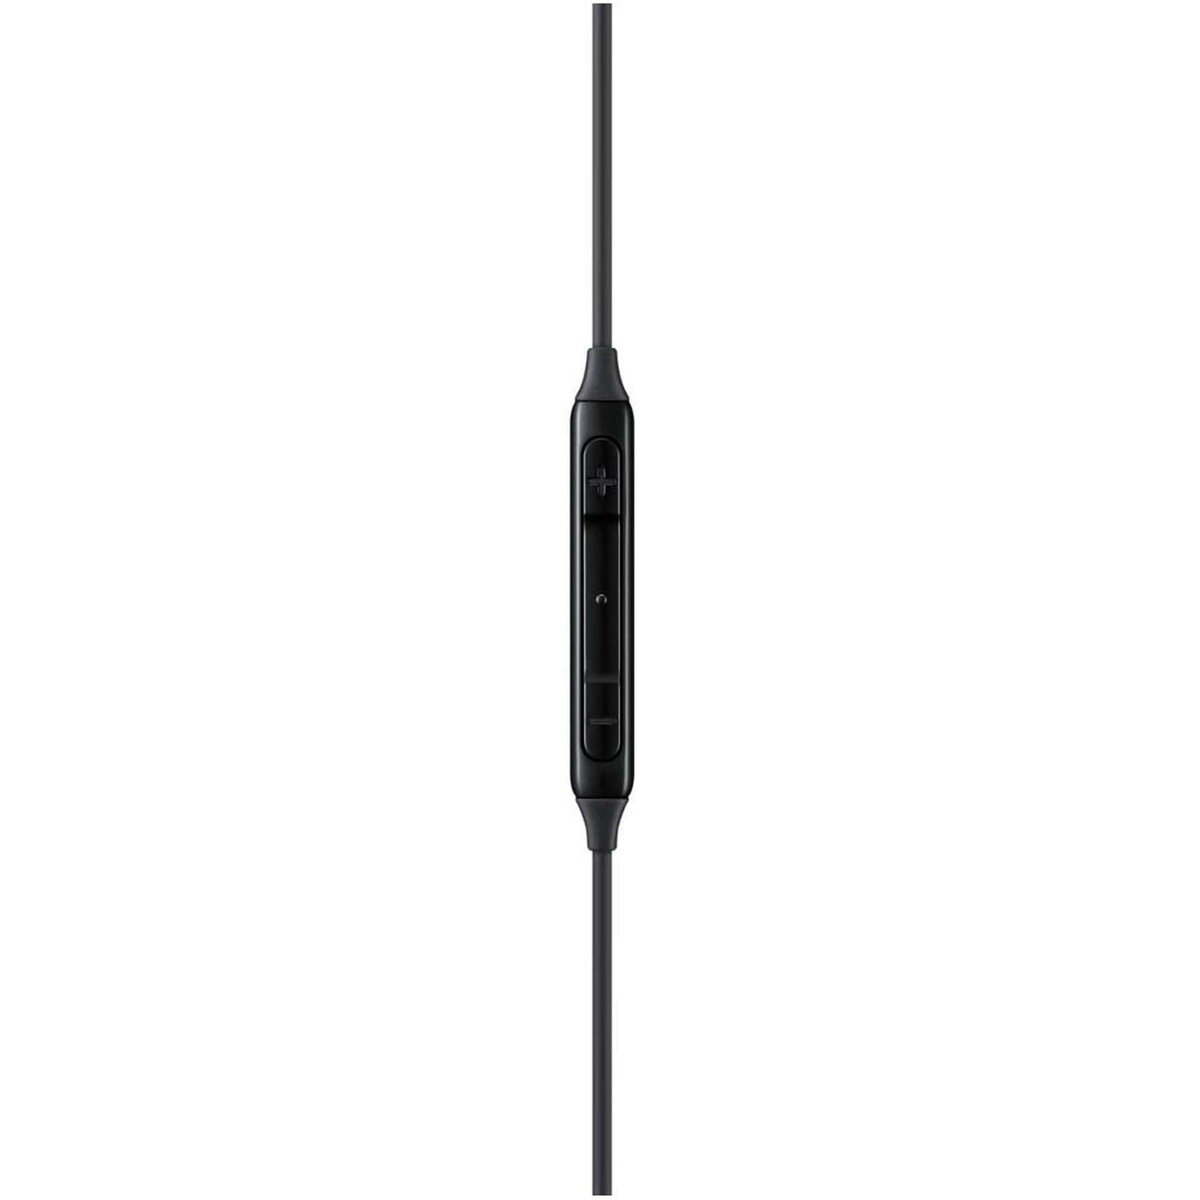 Samsung Stereo In-Ear Earphones Type-C EO-IC100 (Black)